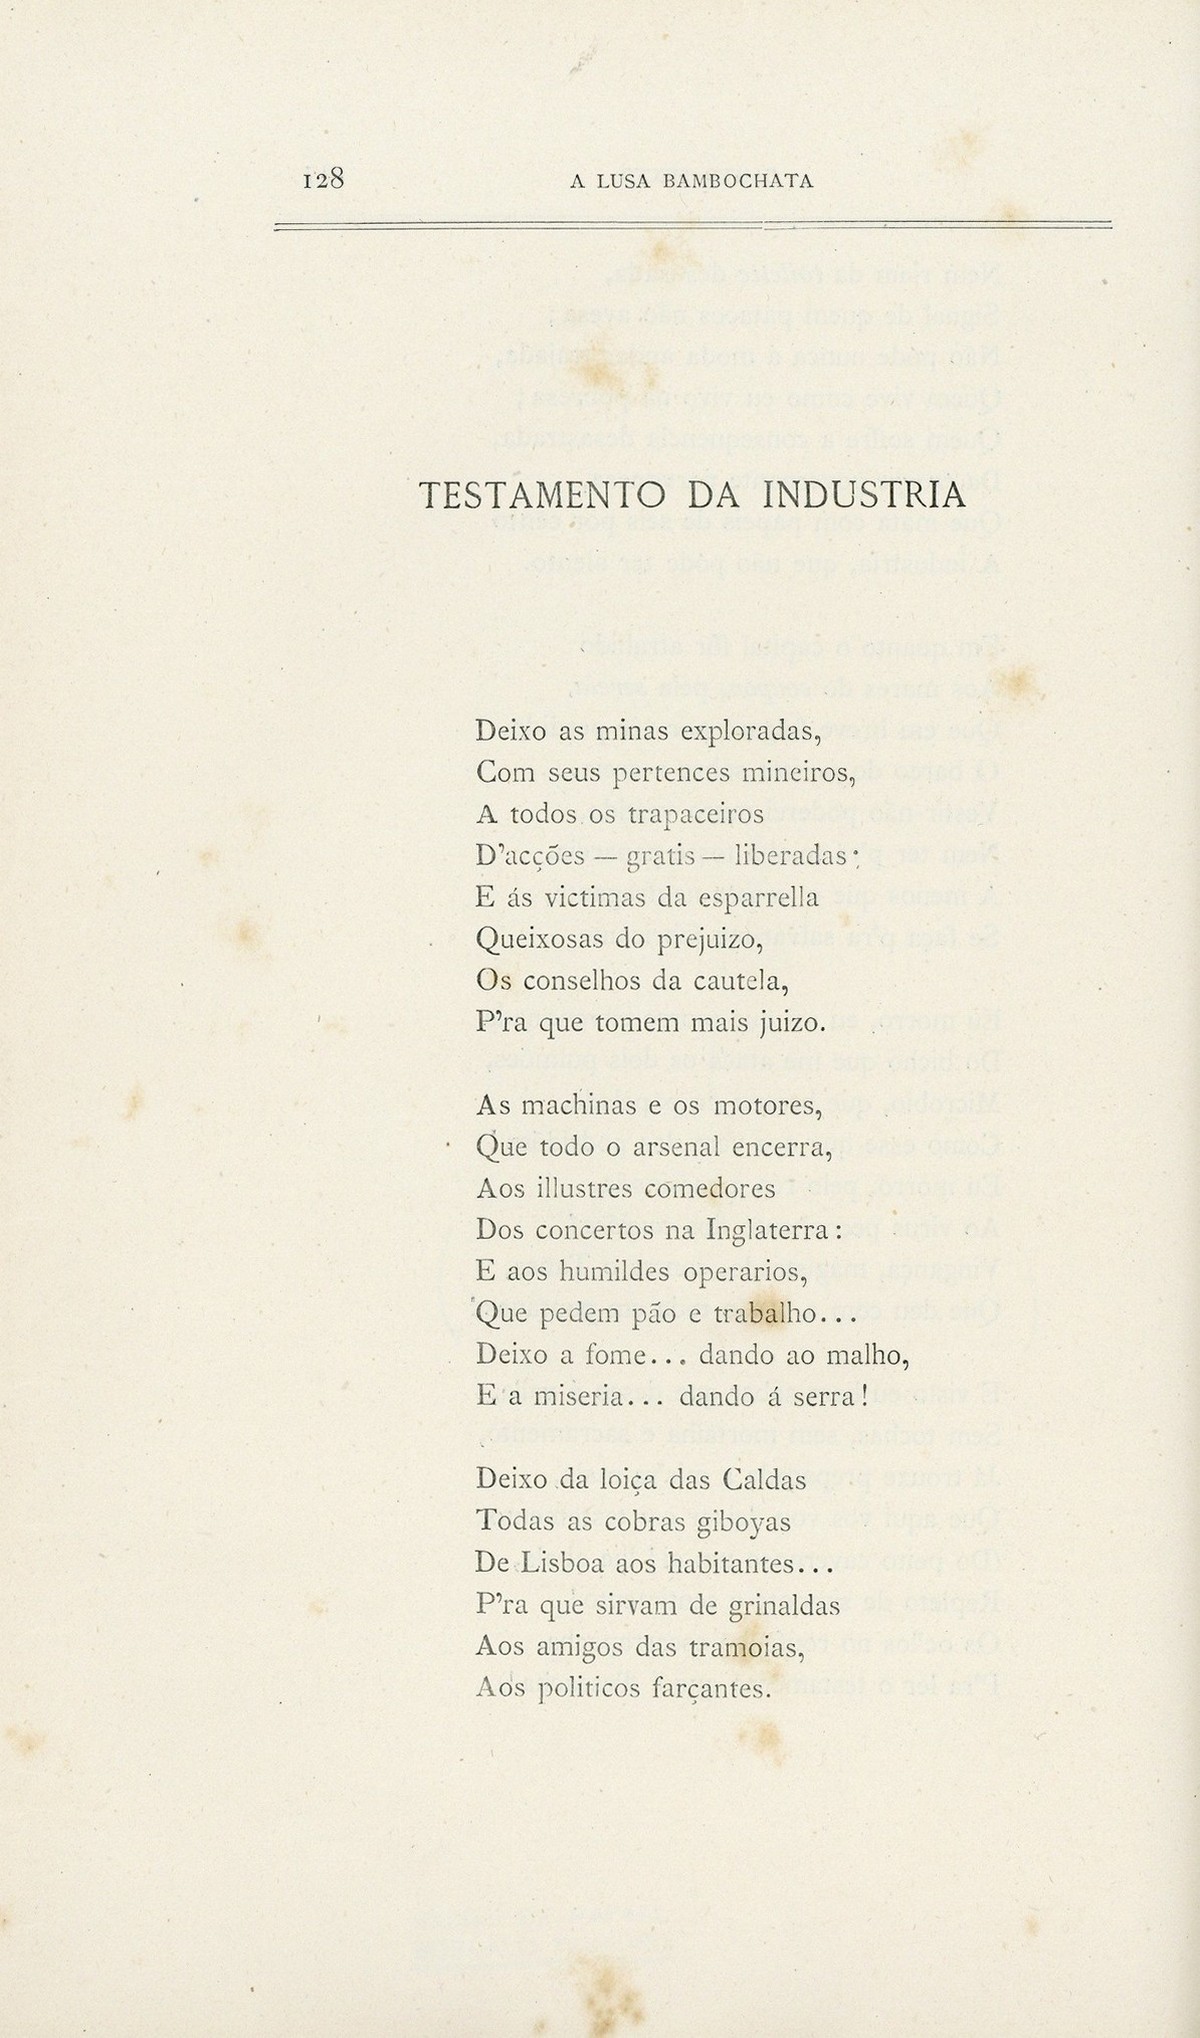 Hemeroteca Digital - A Lusa Bambochata : poema riste em verso alegre